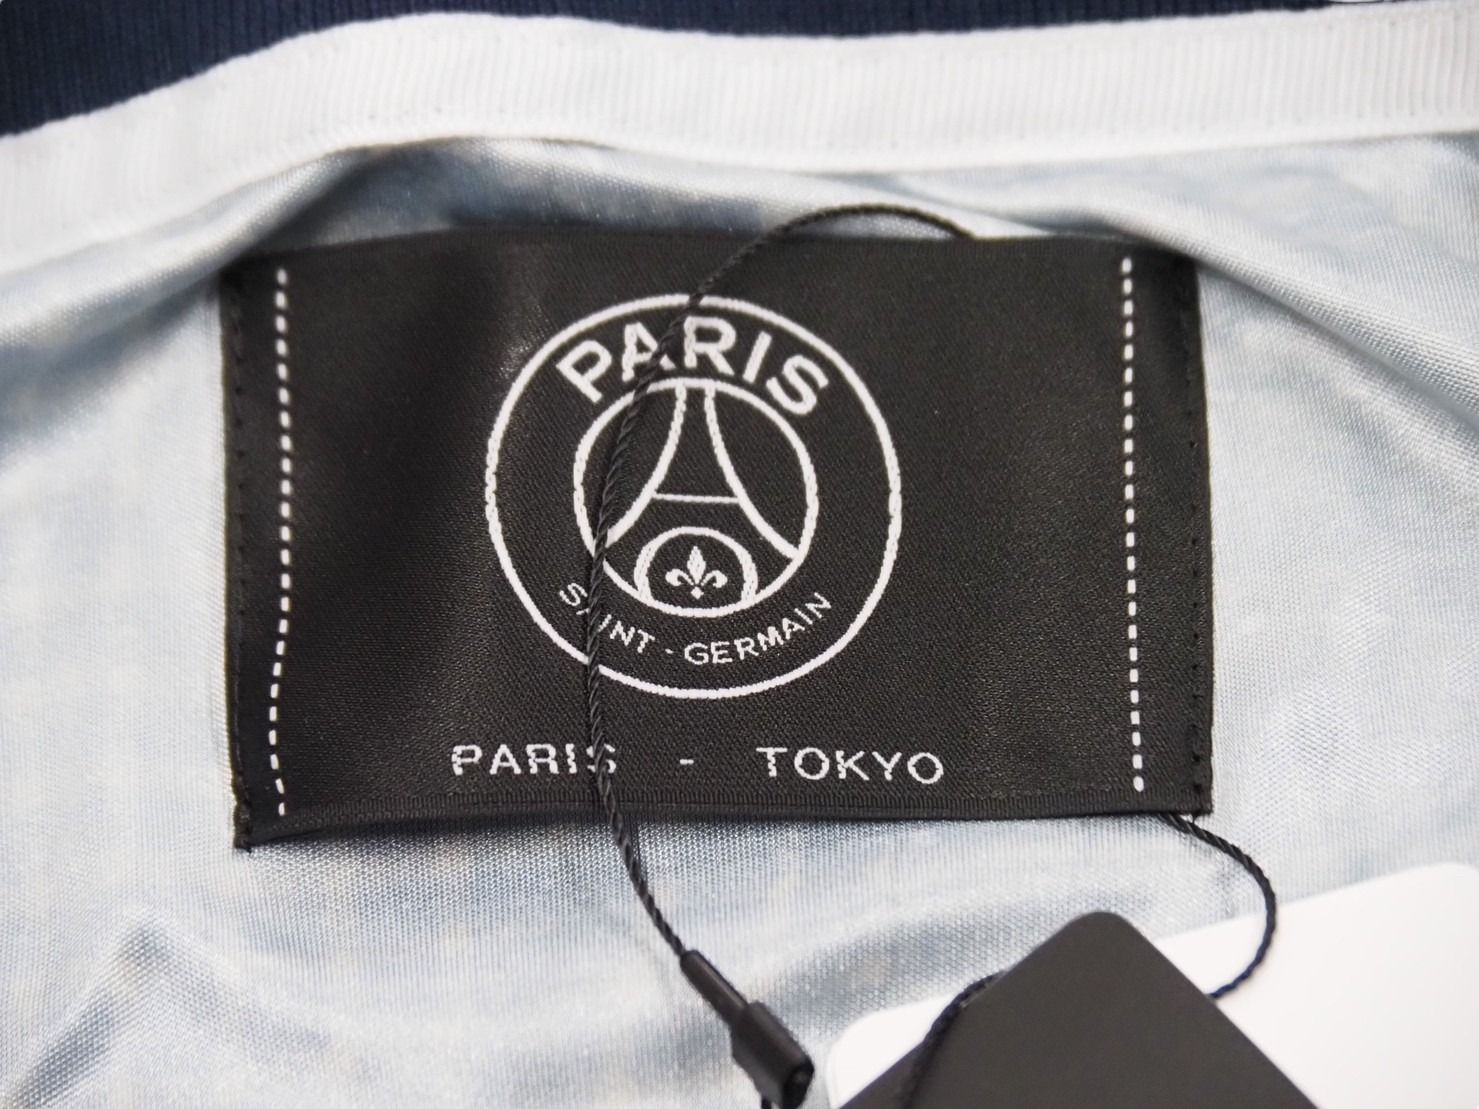 新品未使用品 パリサンジェルマン Poggy × Paris Saint-GermainPSG 半袖シャツ ボロプリント ネイビー サイズXL  52491